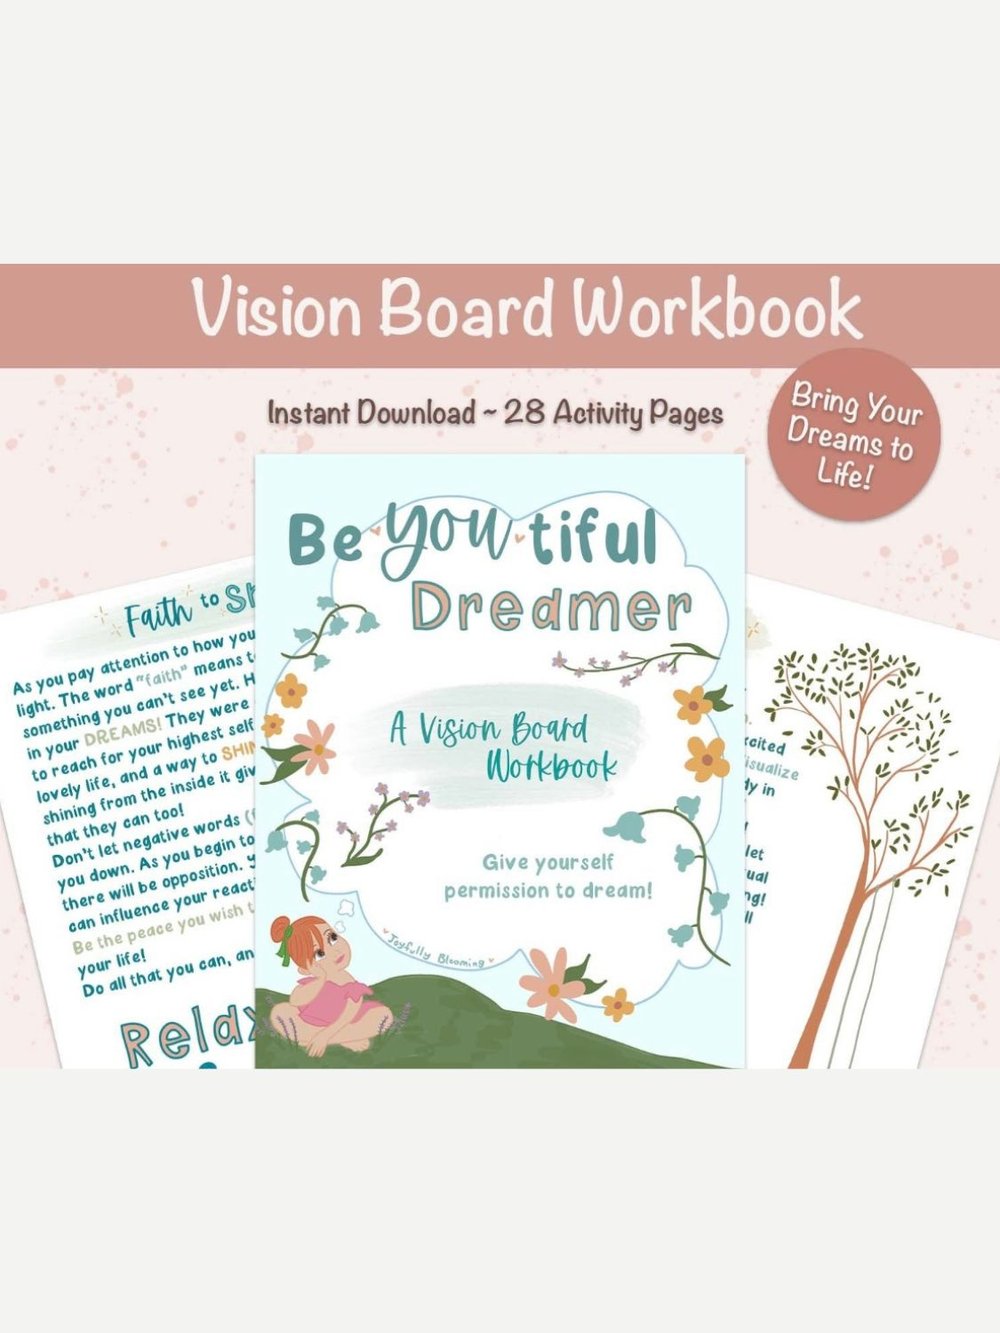 Vision Journal for Women 